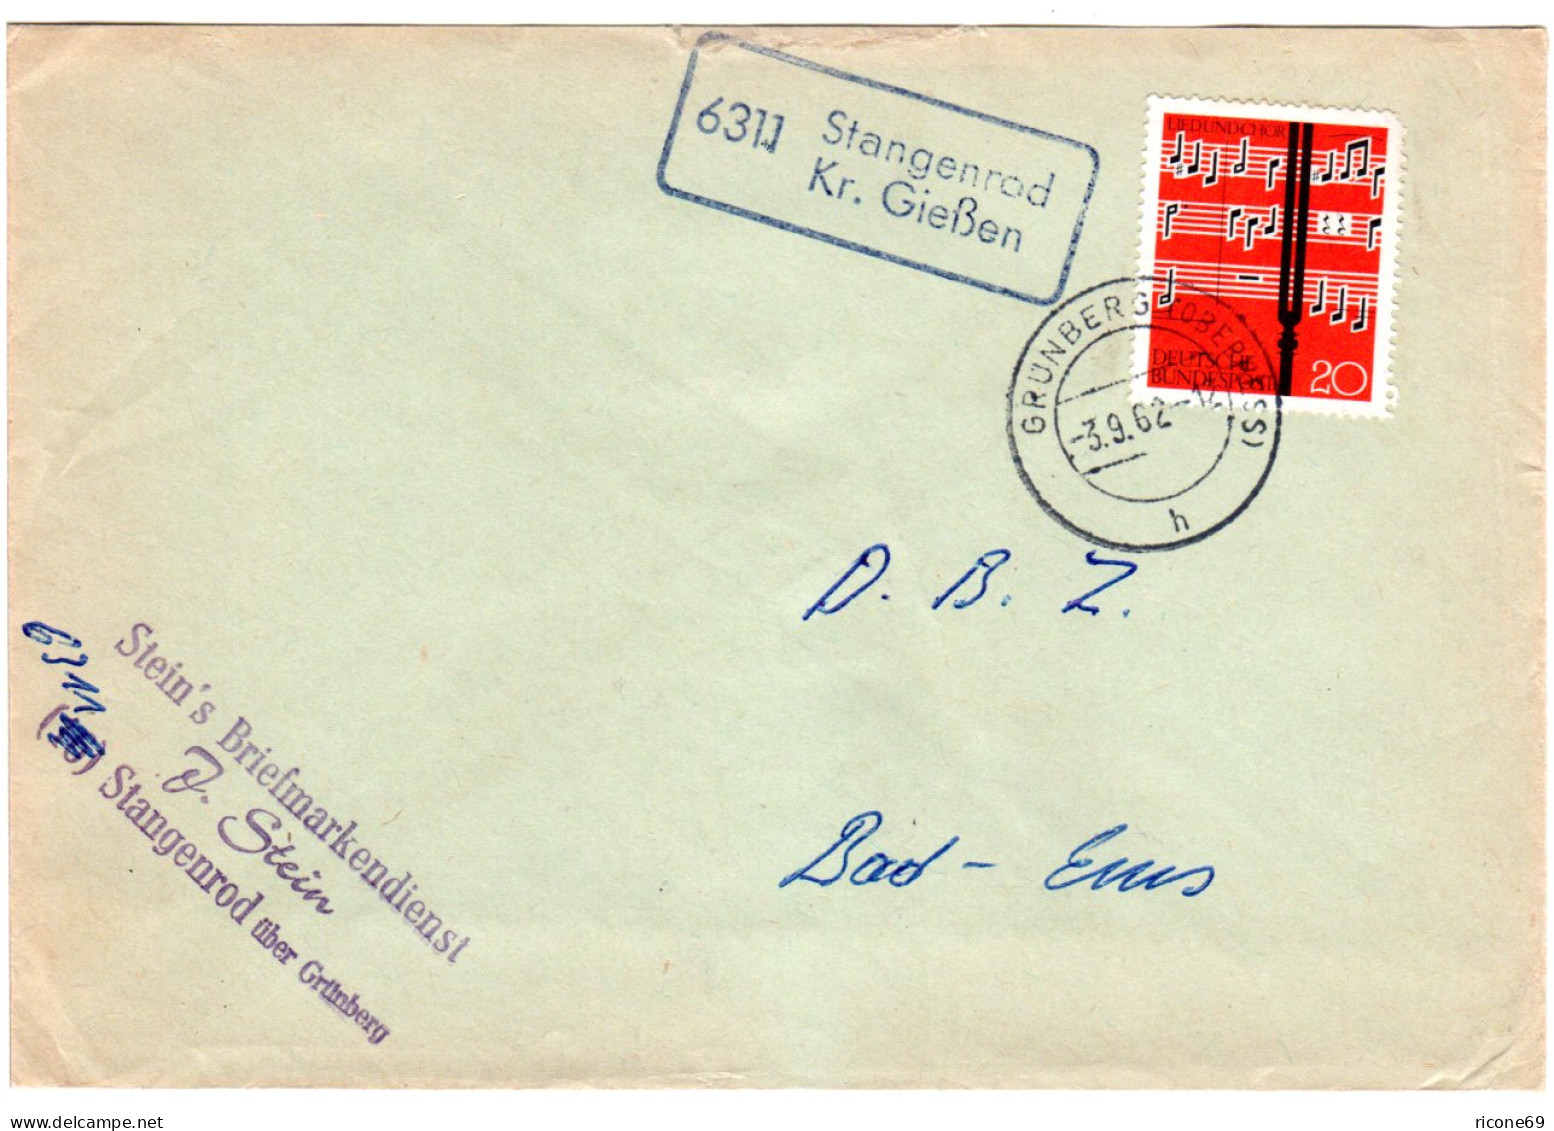 BRD 1962, Landpost Stpl. 6311 STANGENROD Kr. Gießen Auf Brief M. 20 Pf.  - Colecciones